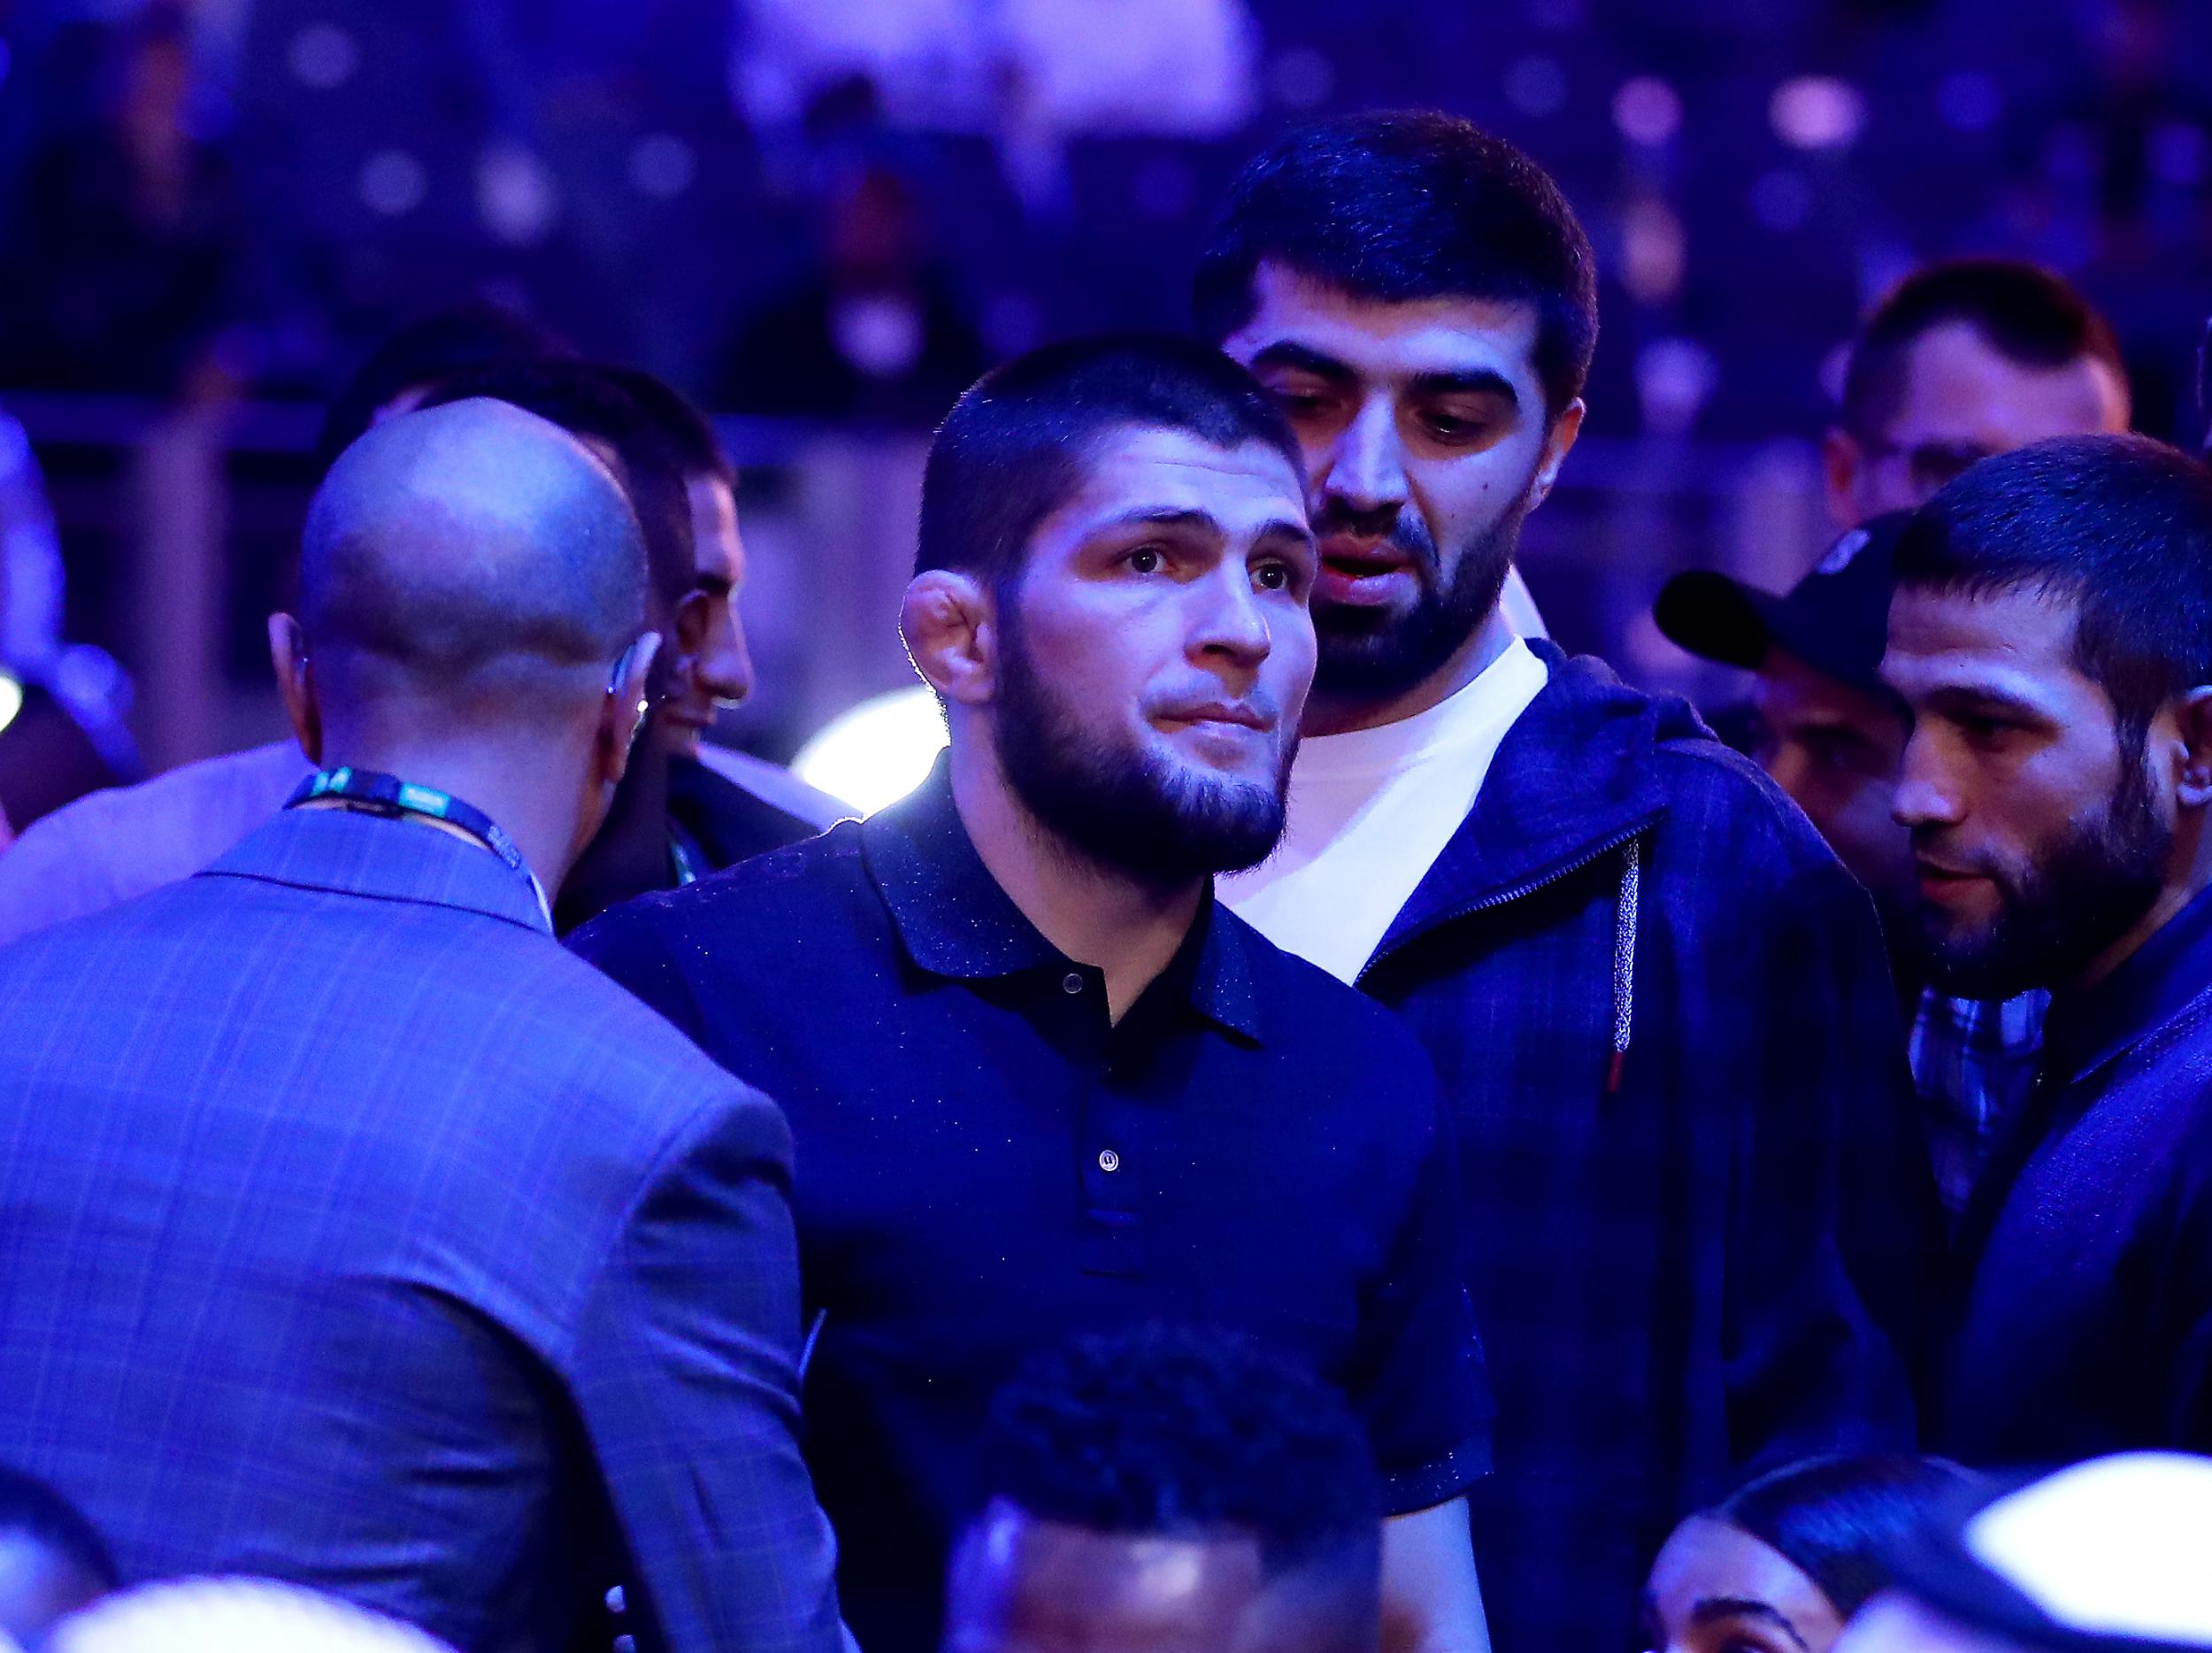 Coronavirus: Khabib Nurmagomedov vs Tony Ferguson UFC 249 fight thrown into further doubt